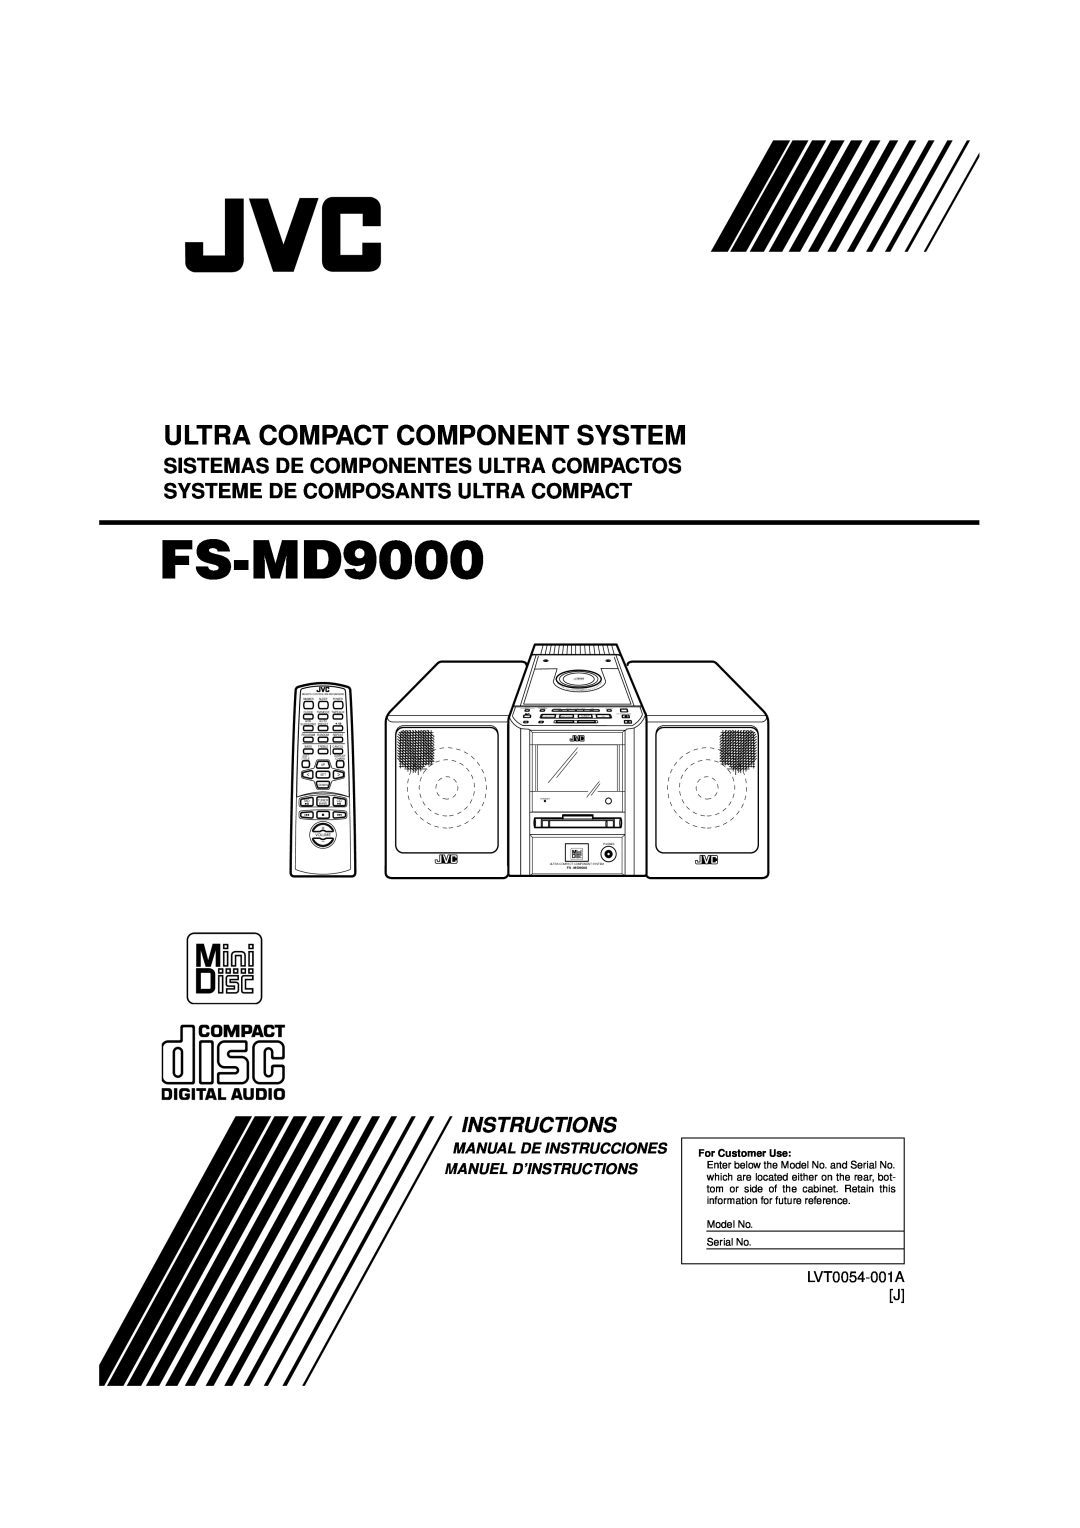 JVC FS-MD9000 manual Manual De Instrucciones Manuel D’Instructions, LVT0054-001AJ, Ultra Compact Component System 